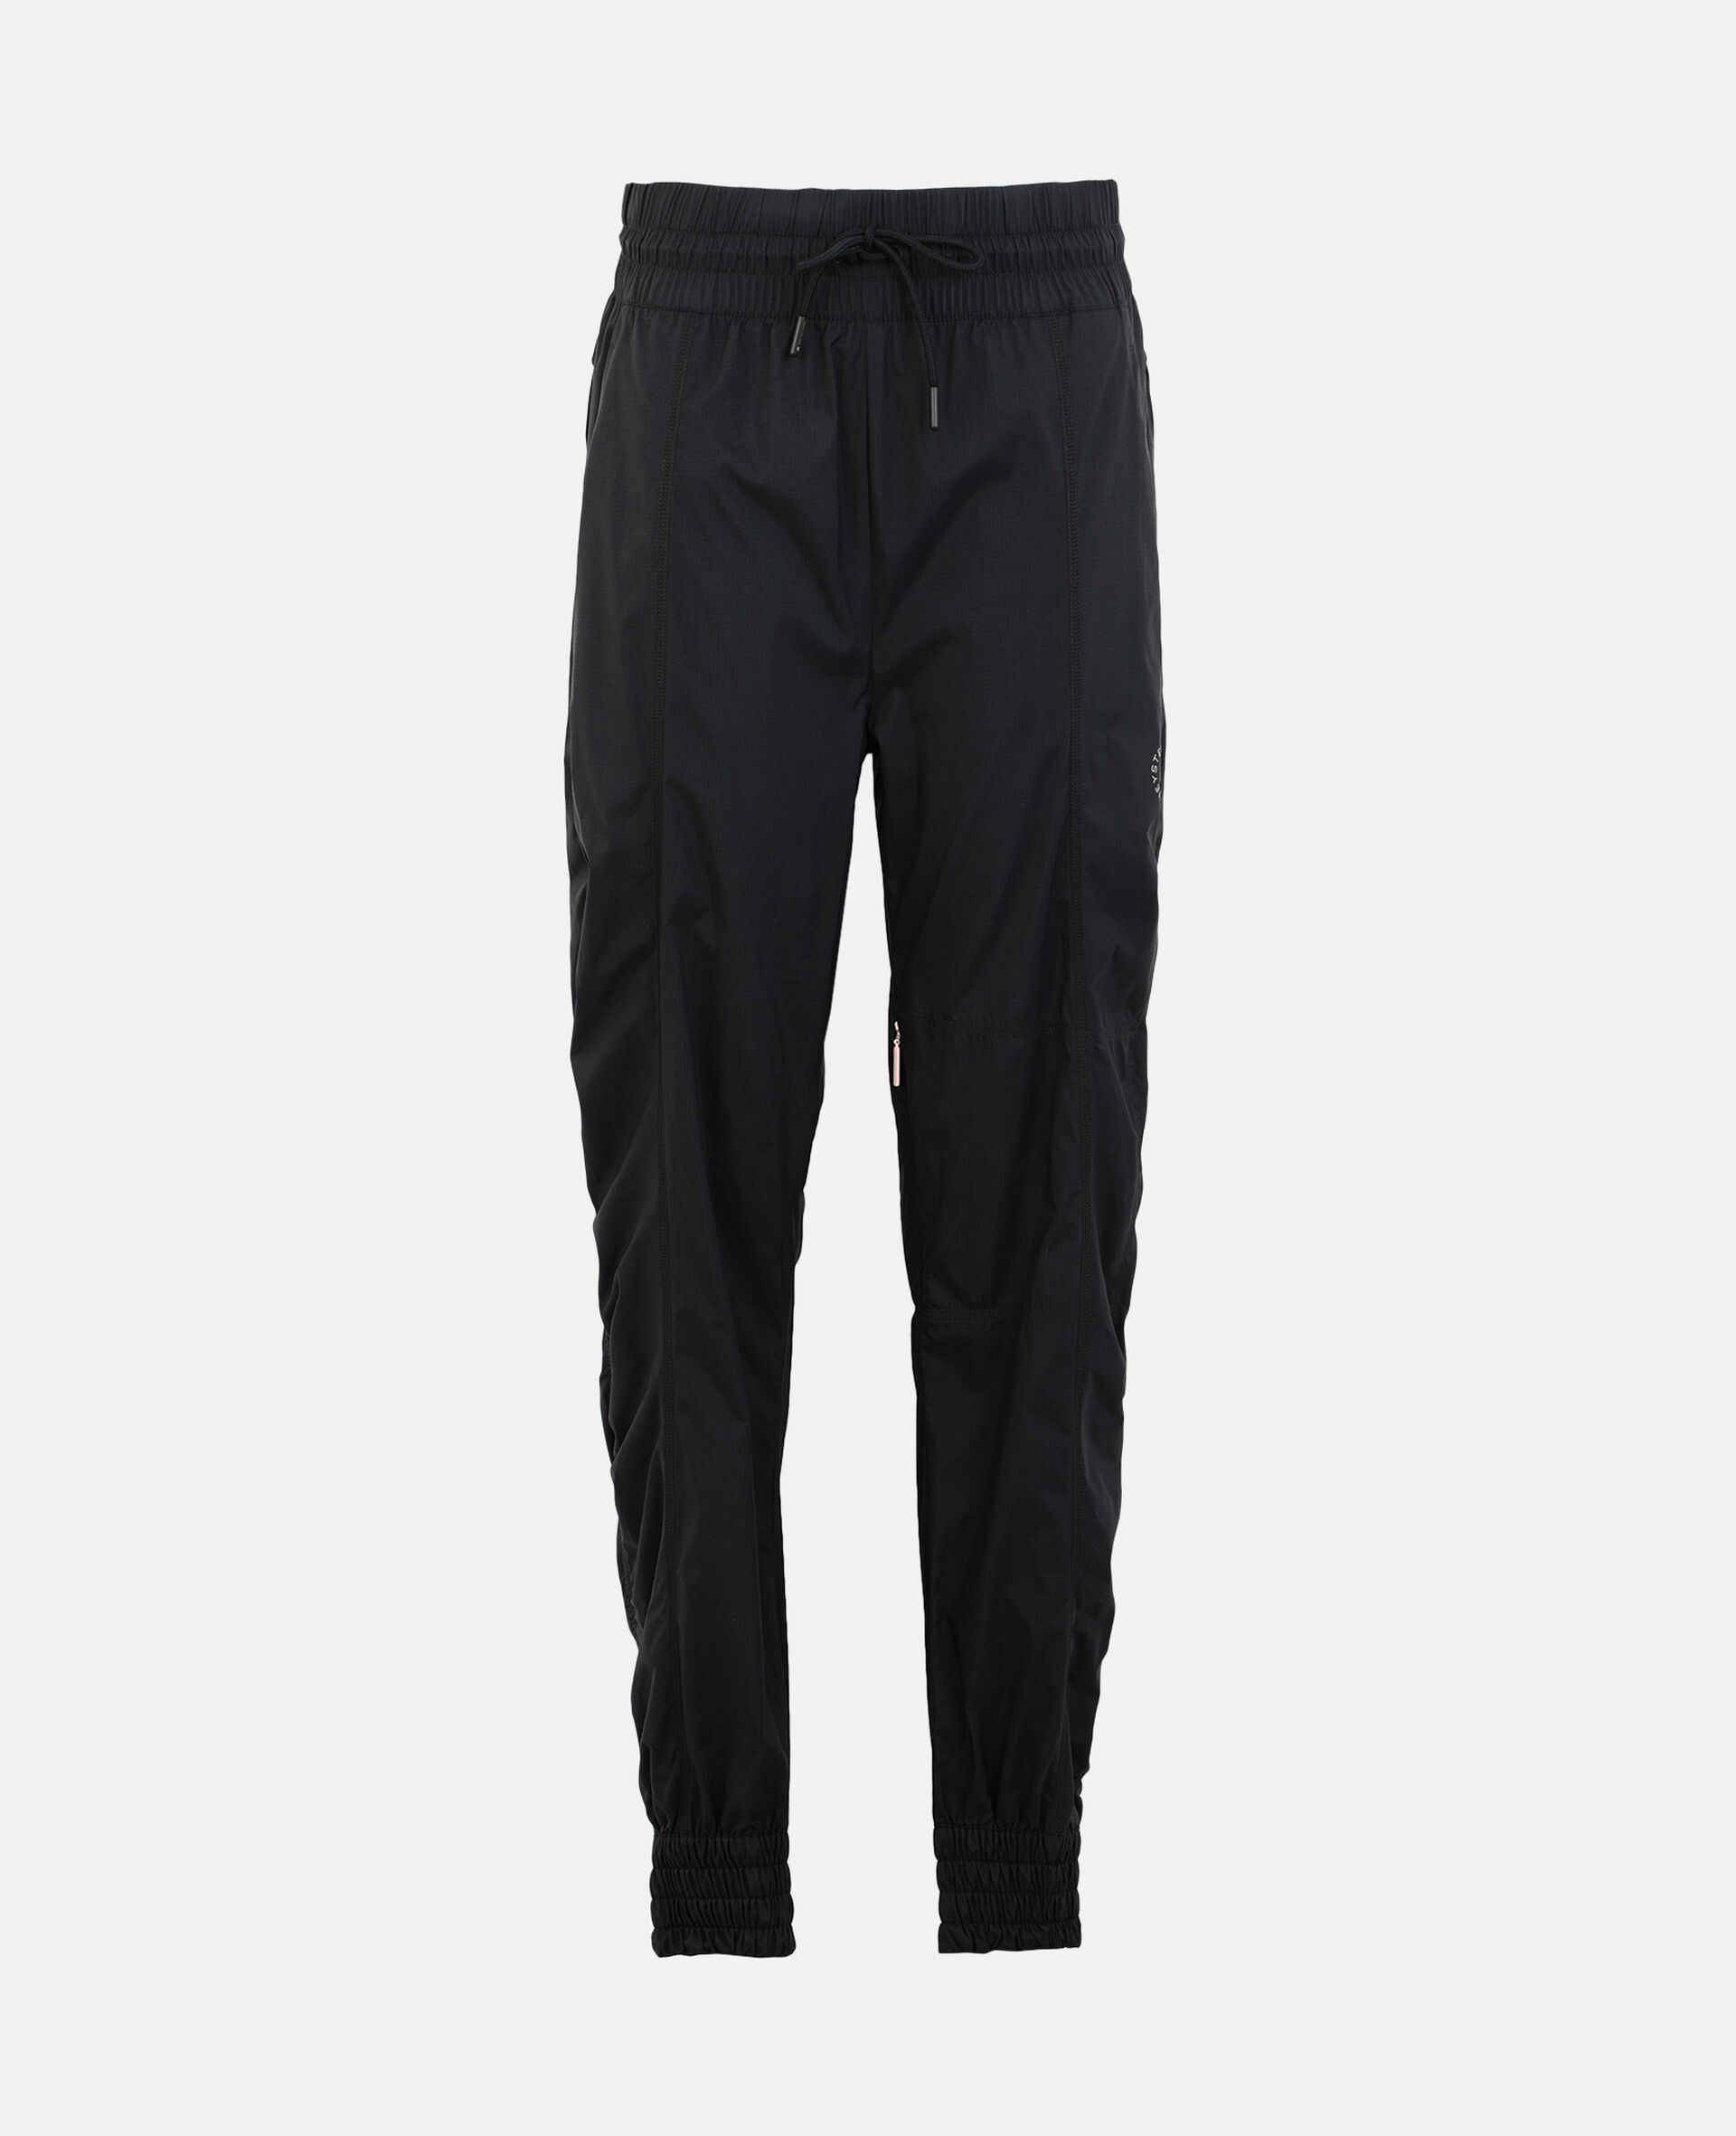 Pantalon de sport tissé noir-Noir-large image number 0